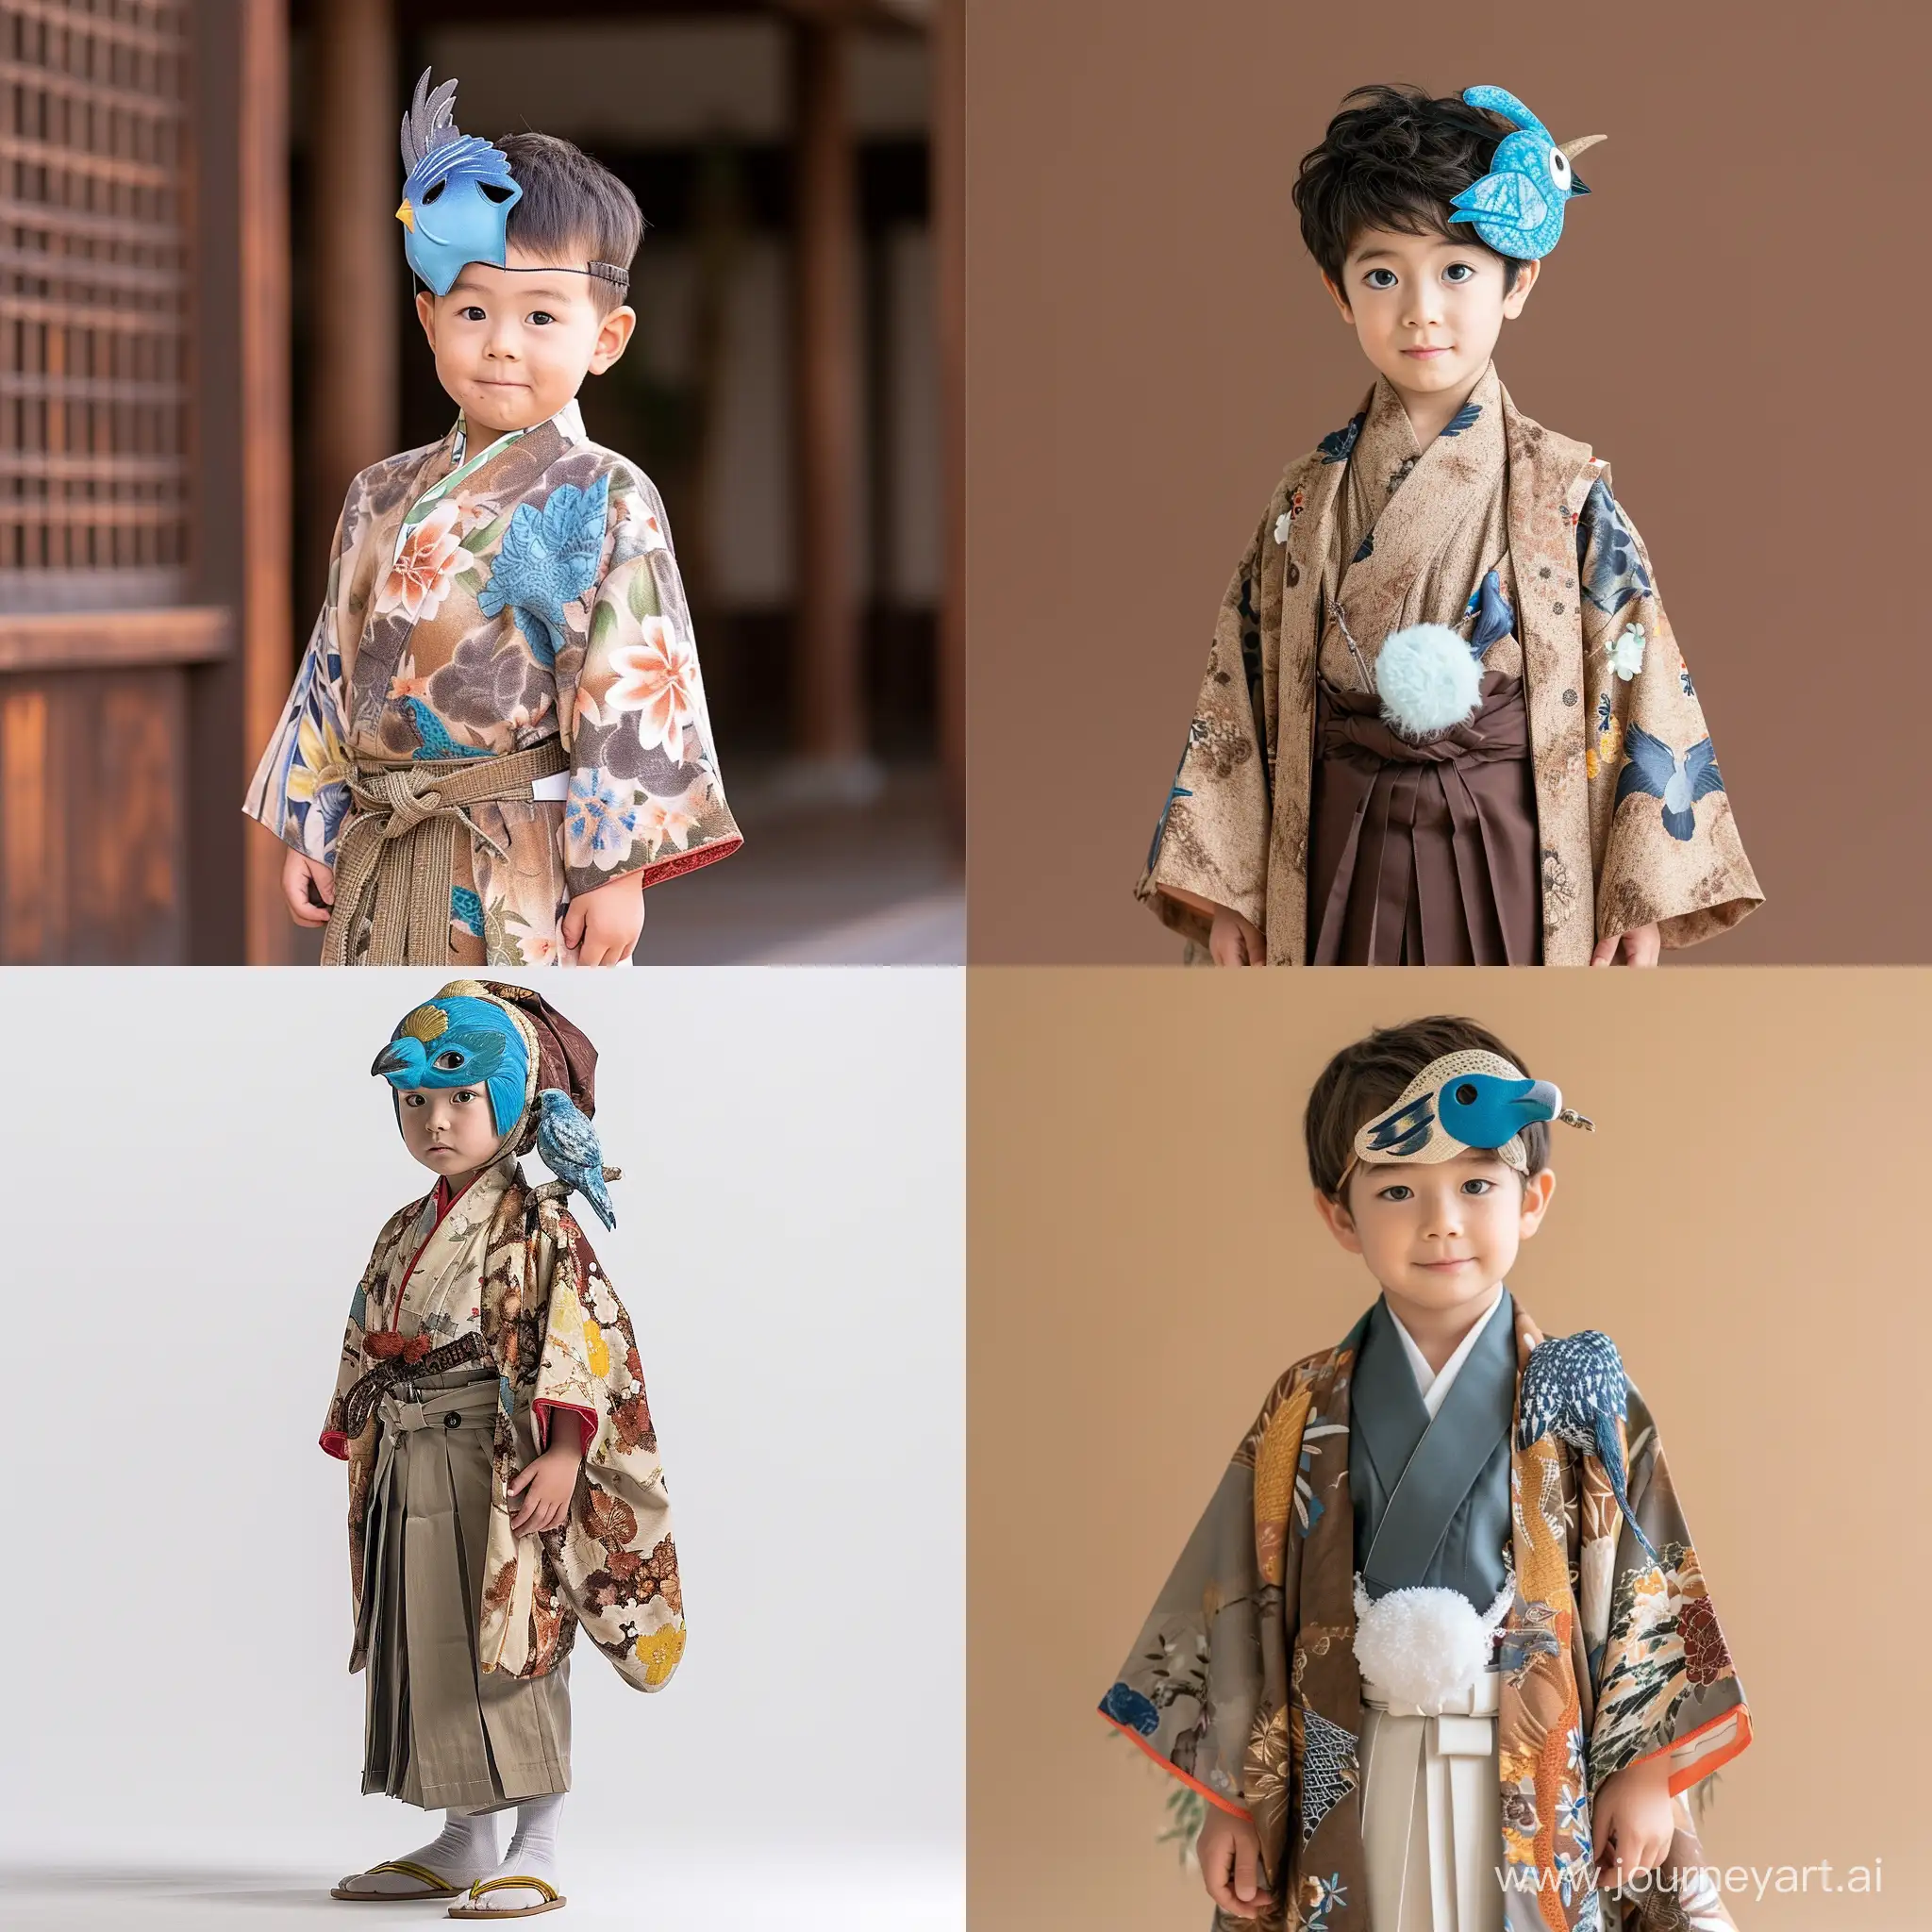 Adorable-Tengu-Yokai-Boy-in-Traditional-Kimono-with-Blue-Bird-Mask